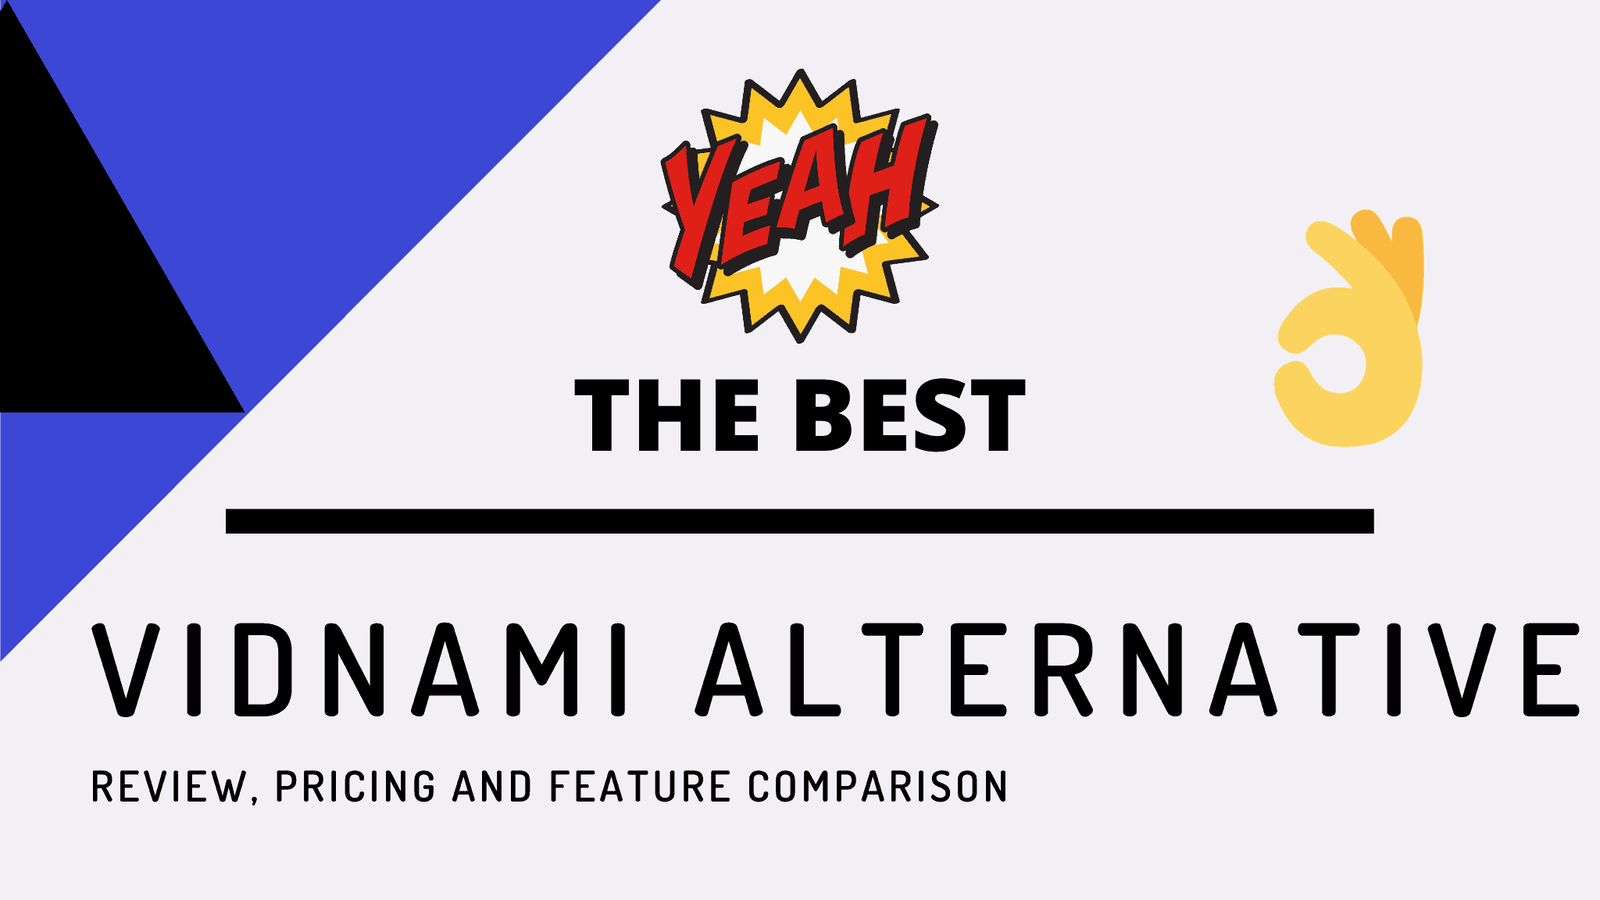 The Best Vidnami Alternative